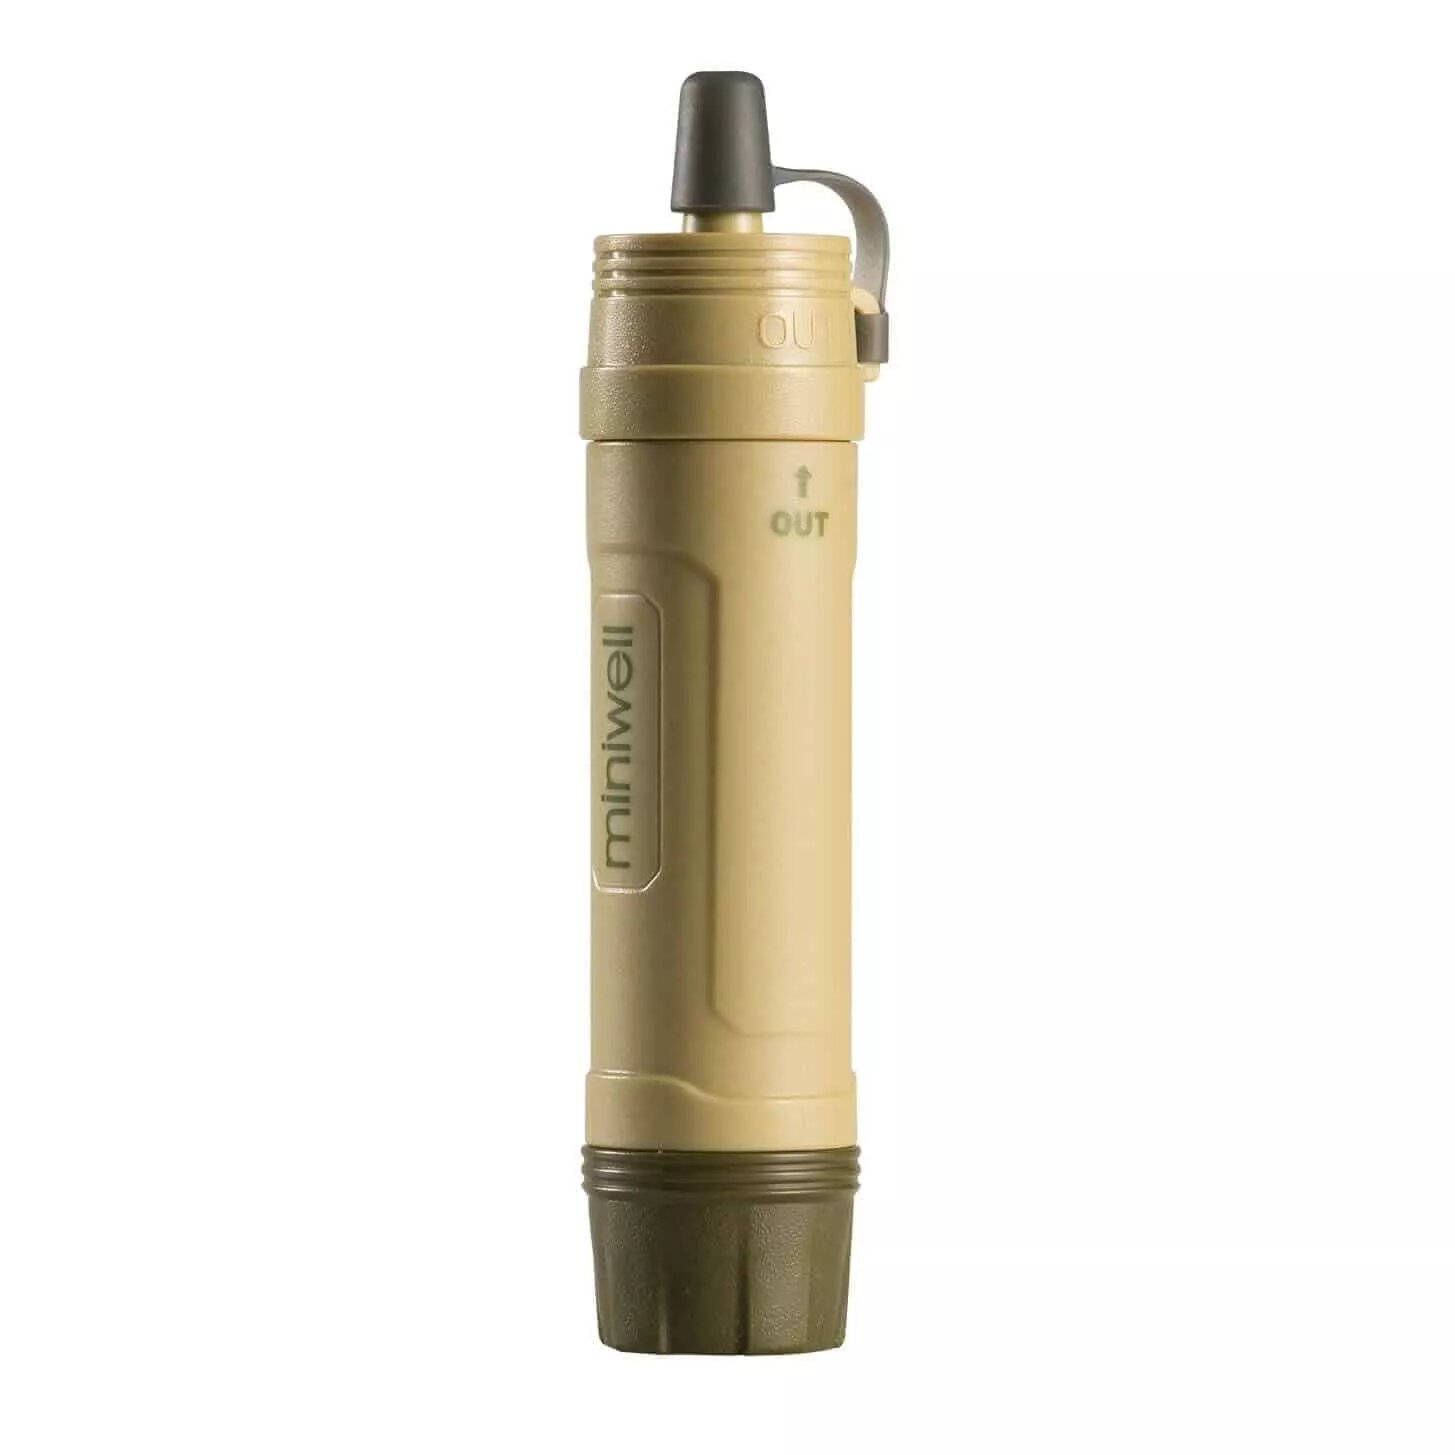 Miniwell L605/Survivor Filter Фильтр трубочка(ультрафильтрация 0.1 мкм) туристический для воды улучшает качество в походе/полевых ситуациях